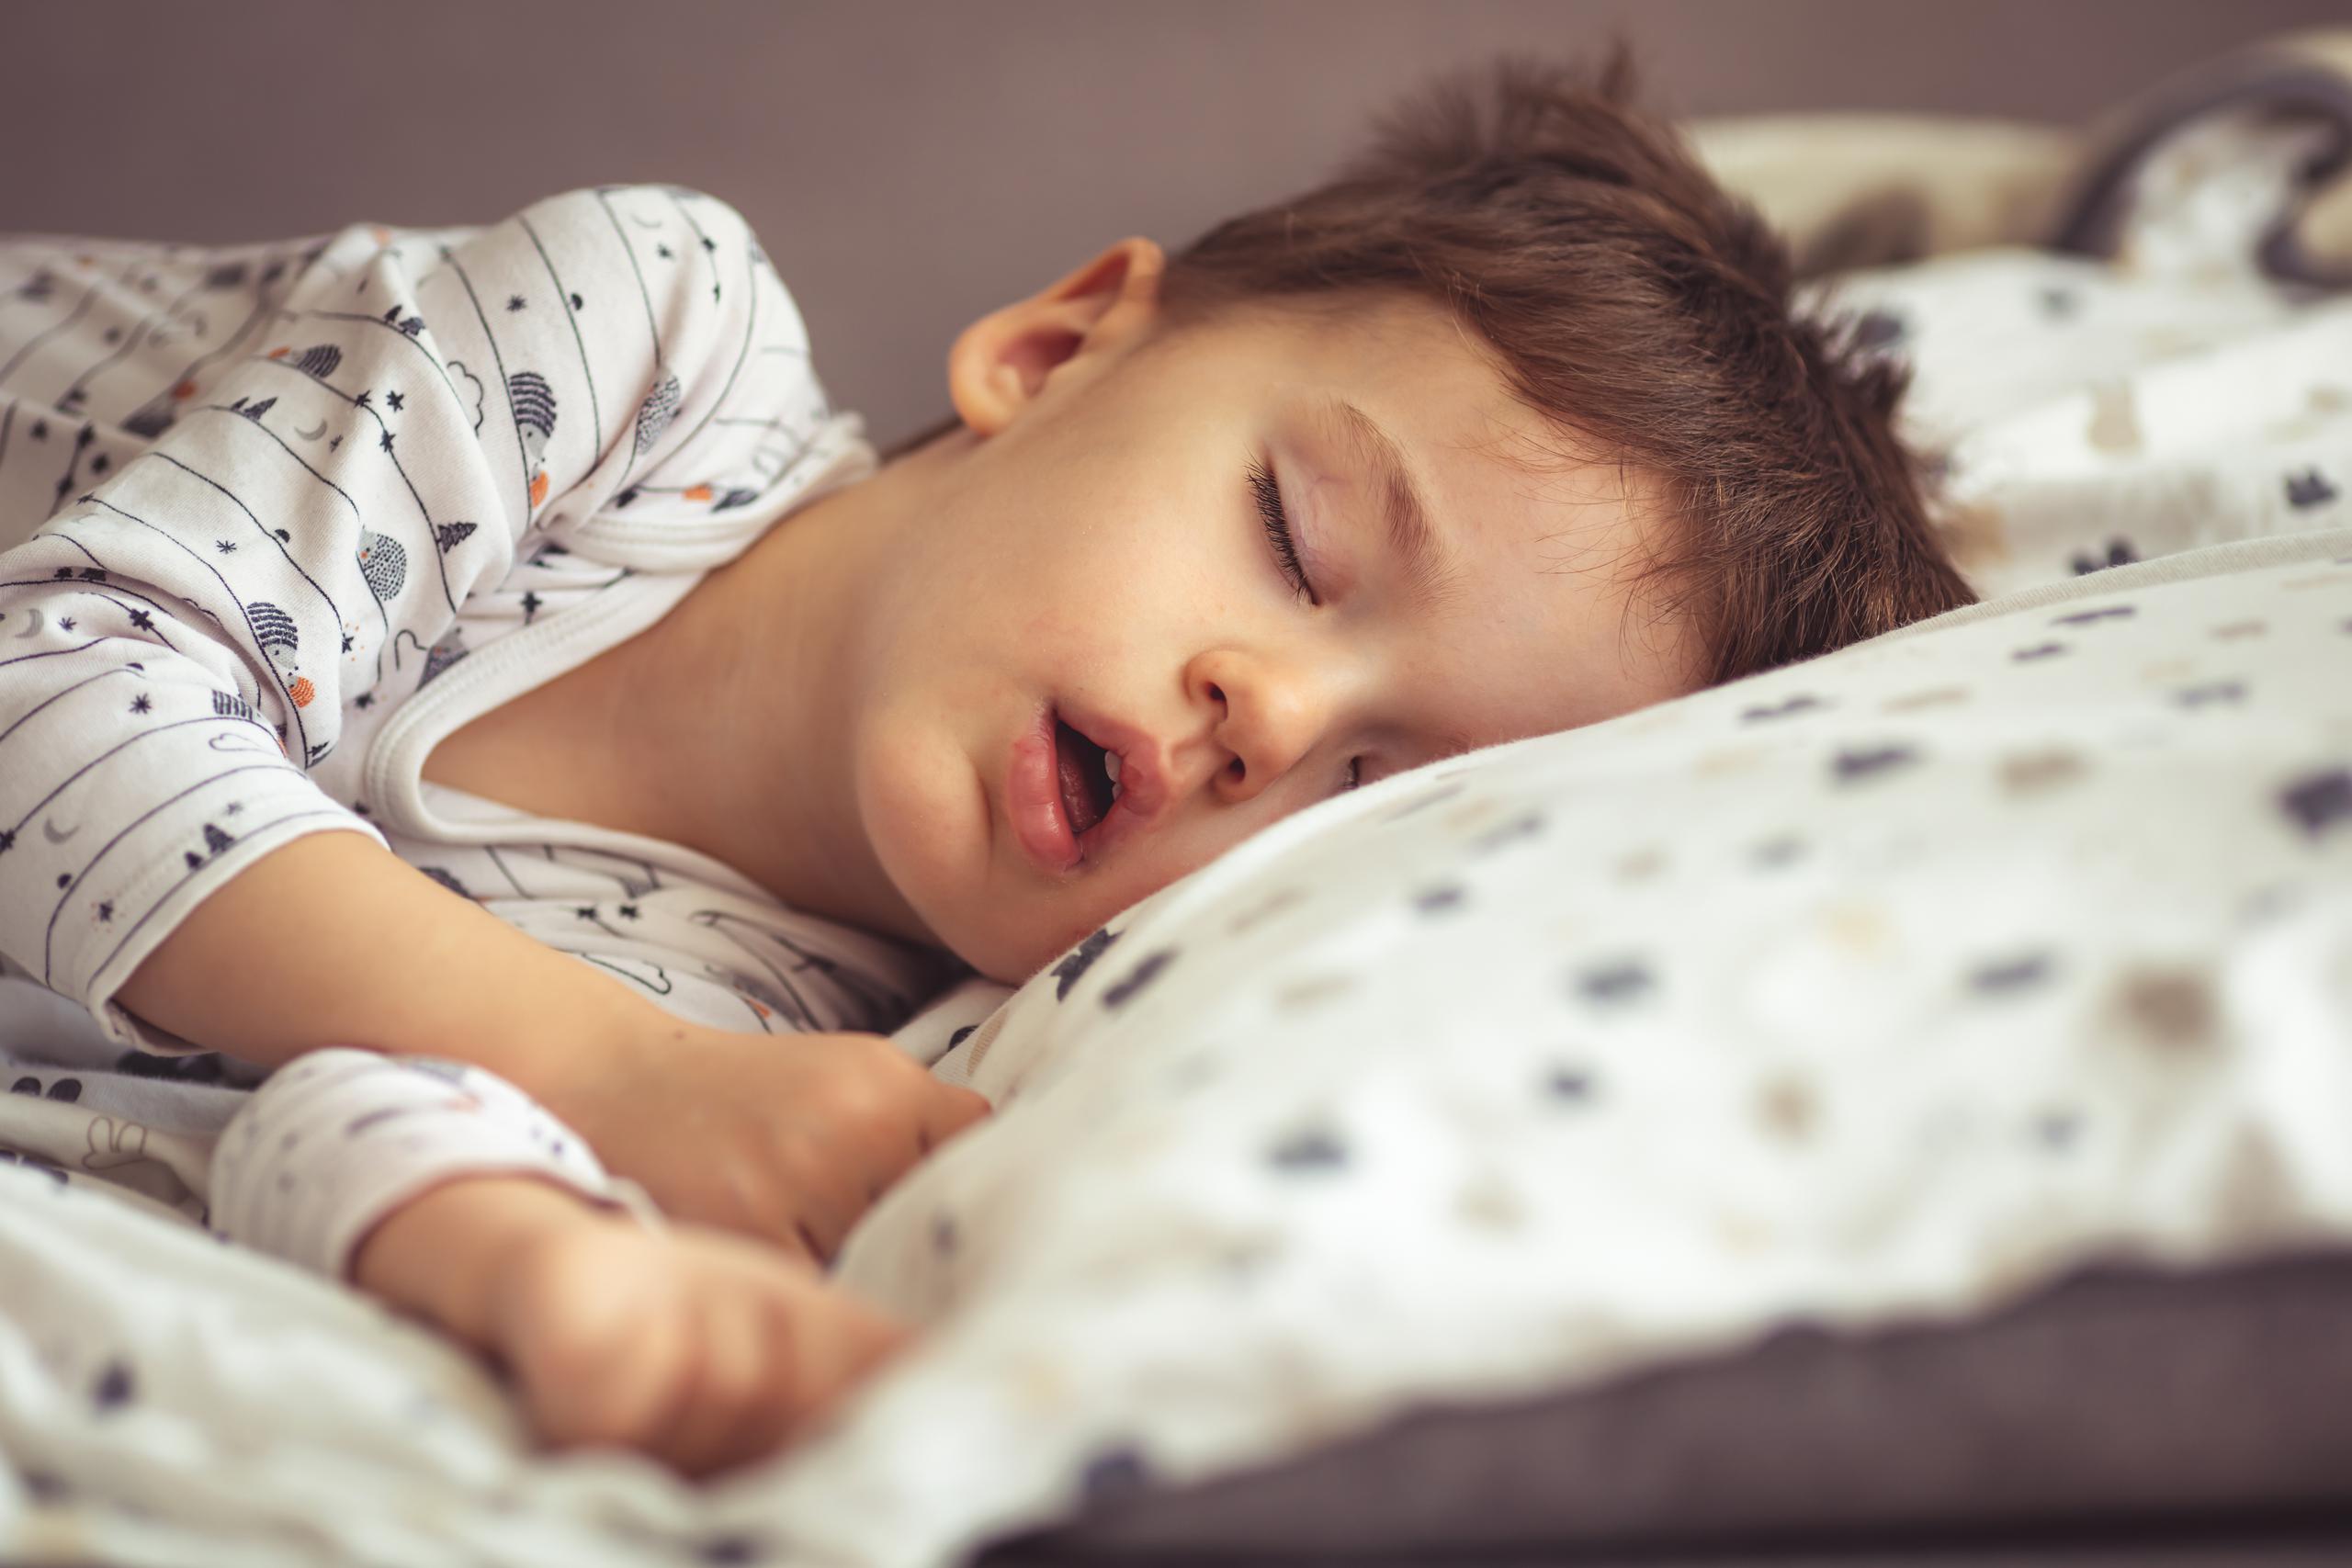 Los expertos estiman que el 4% de los niños de entre 2 y 8 años ronca y que el 1% presenta apnea del sueño.